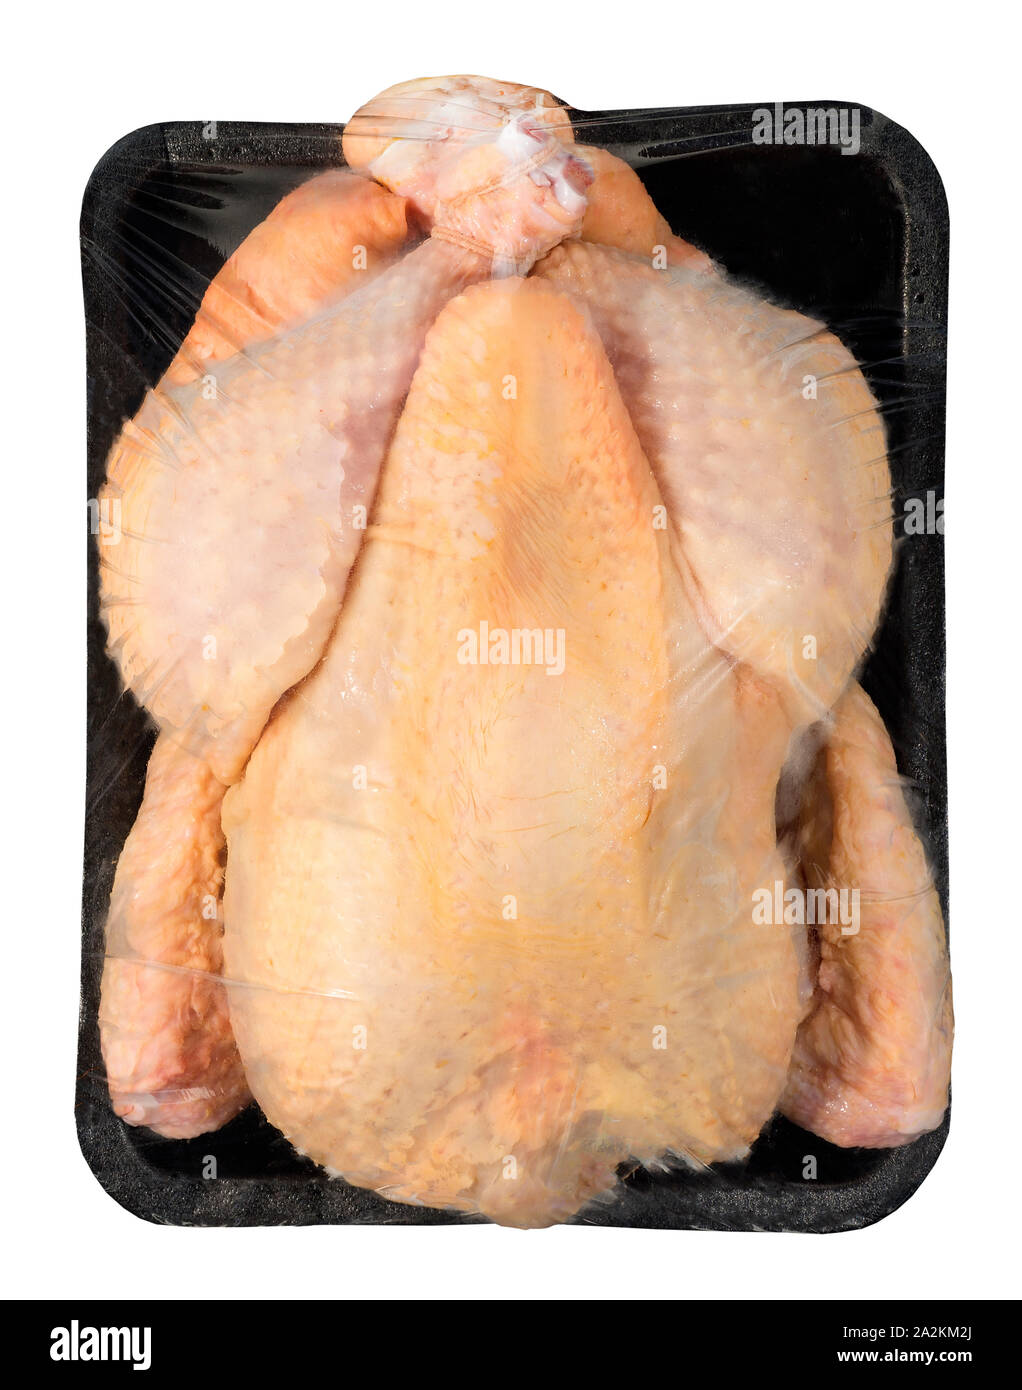 Pollo envasados en bandeja de plástico Foto de stock